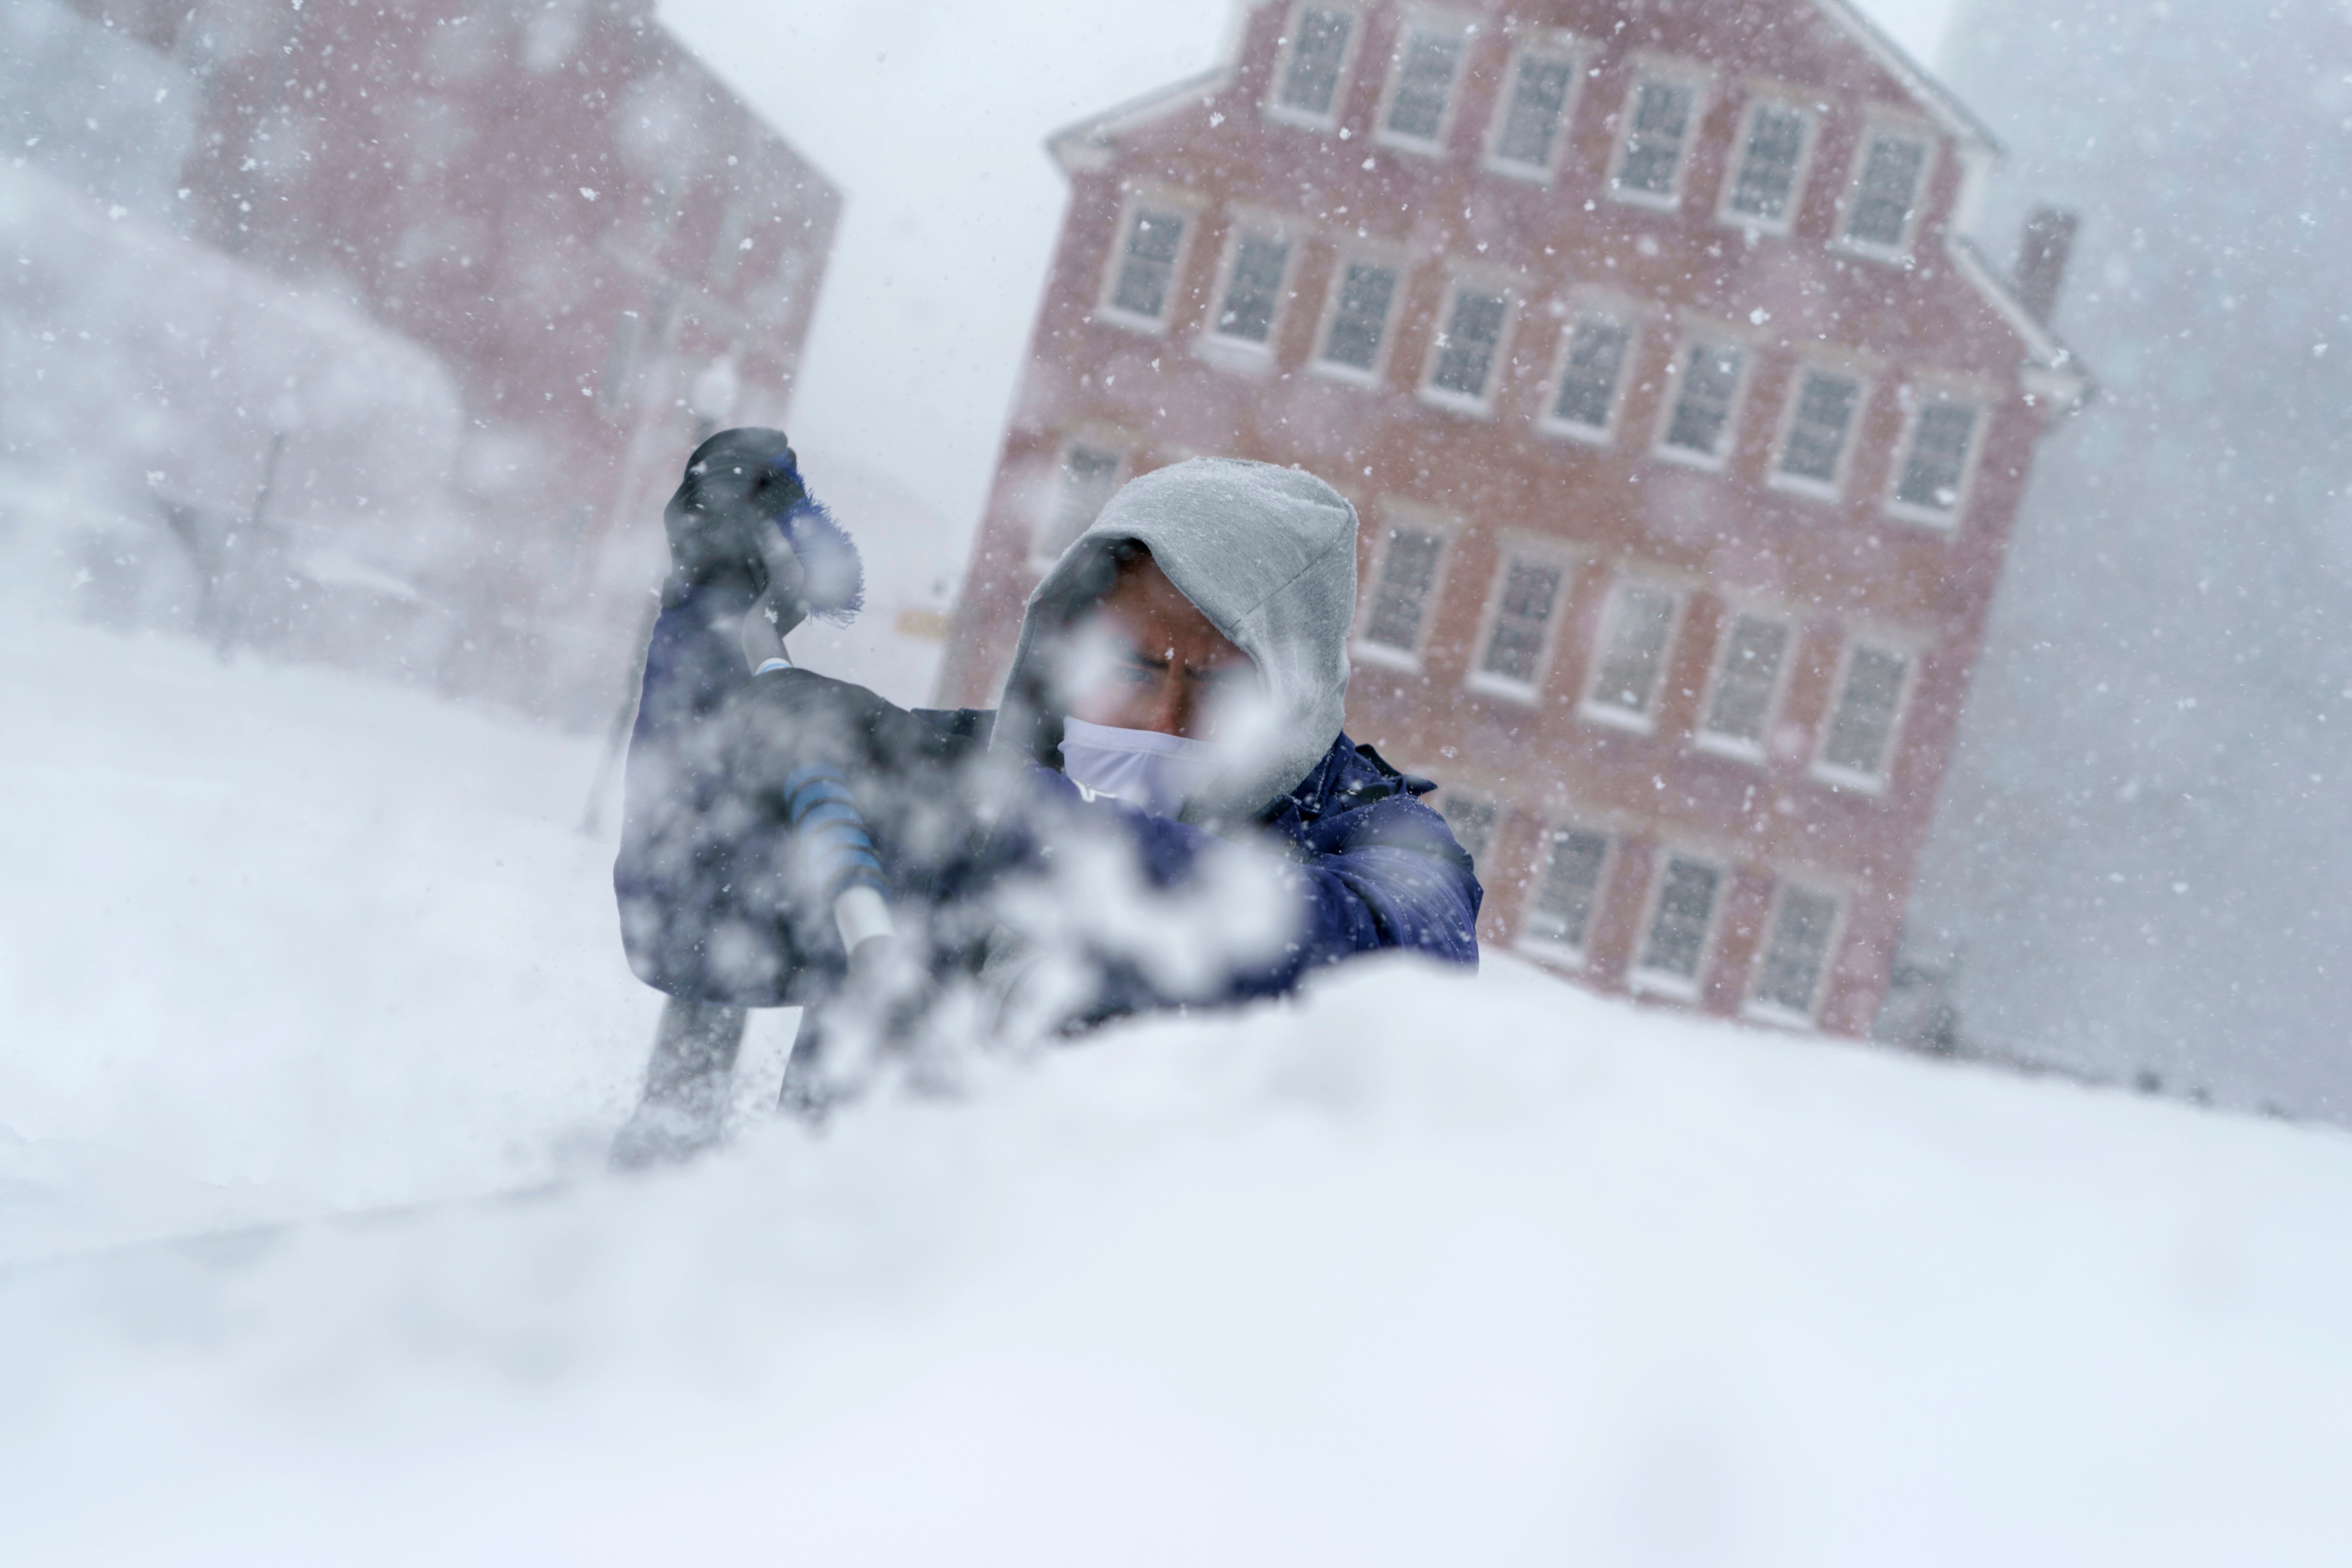 Xavier Martínez raspa la nieve de su parabrisas durante una tormenta en Providence, RI, el 29 de enero de 2022